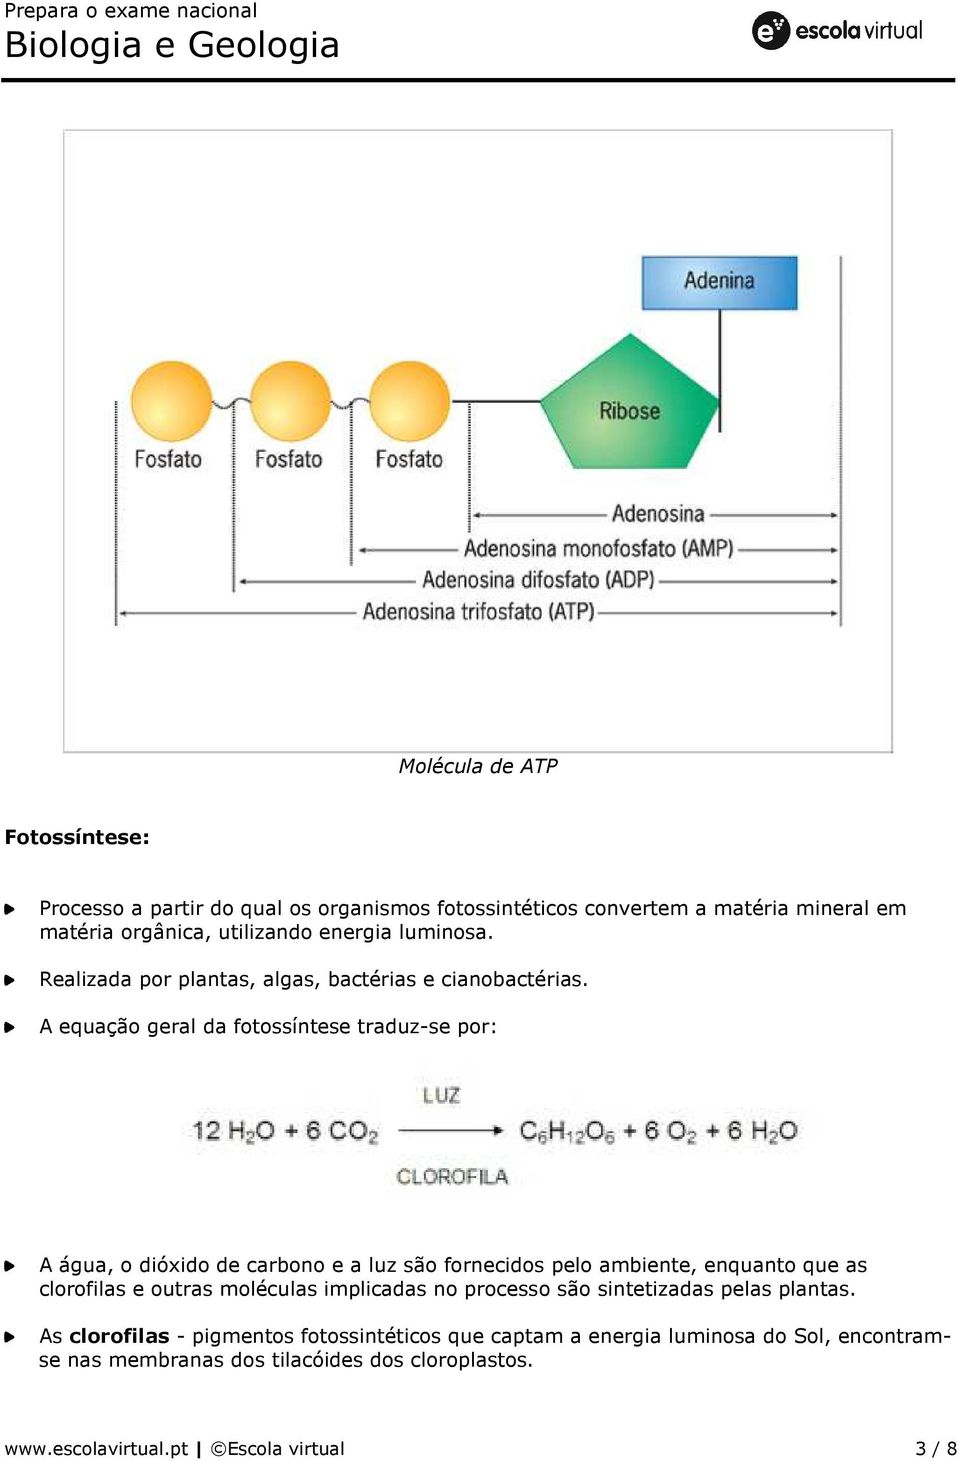 A equação geral da fotossíntese traduz-se por: A água, o dióxido de carbono e a luz são fornecidos pelo ambiente, enquanto que as clorofilas e outras